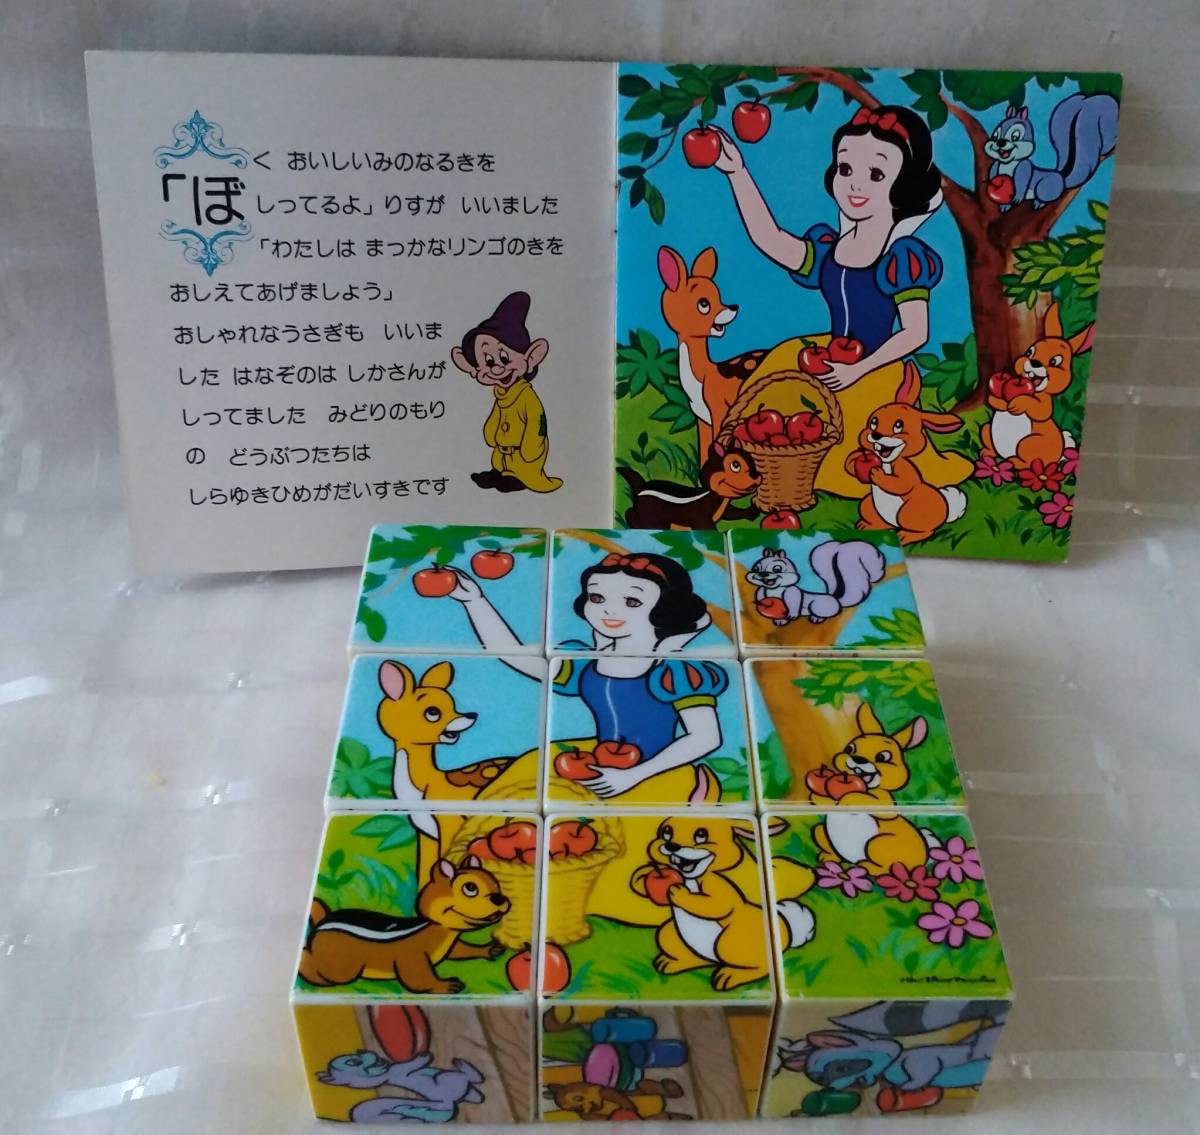 [ бесплатная доставка ] редкий Showa Retro игрушка Disney ...... Cube мозаика сборная головоломка книга с картинками есть USED Apollo фирма 